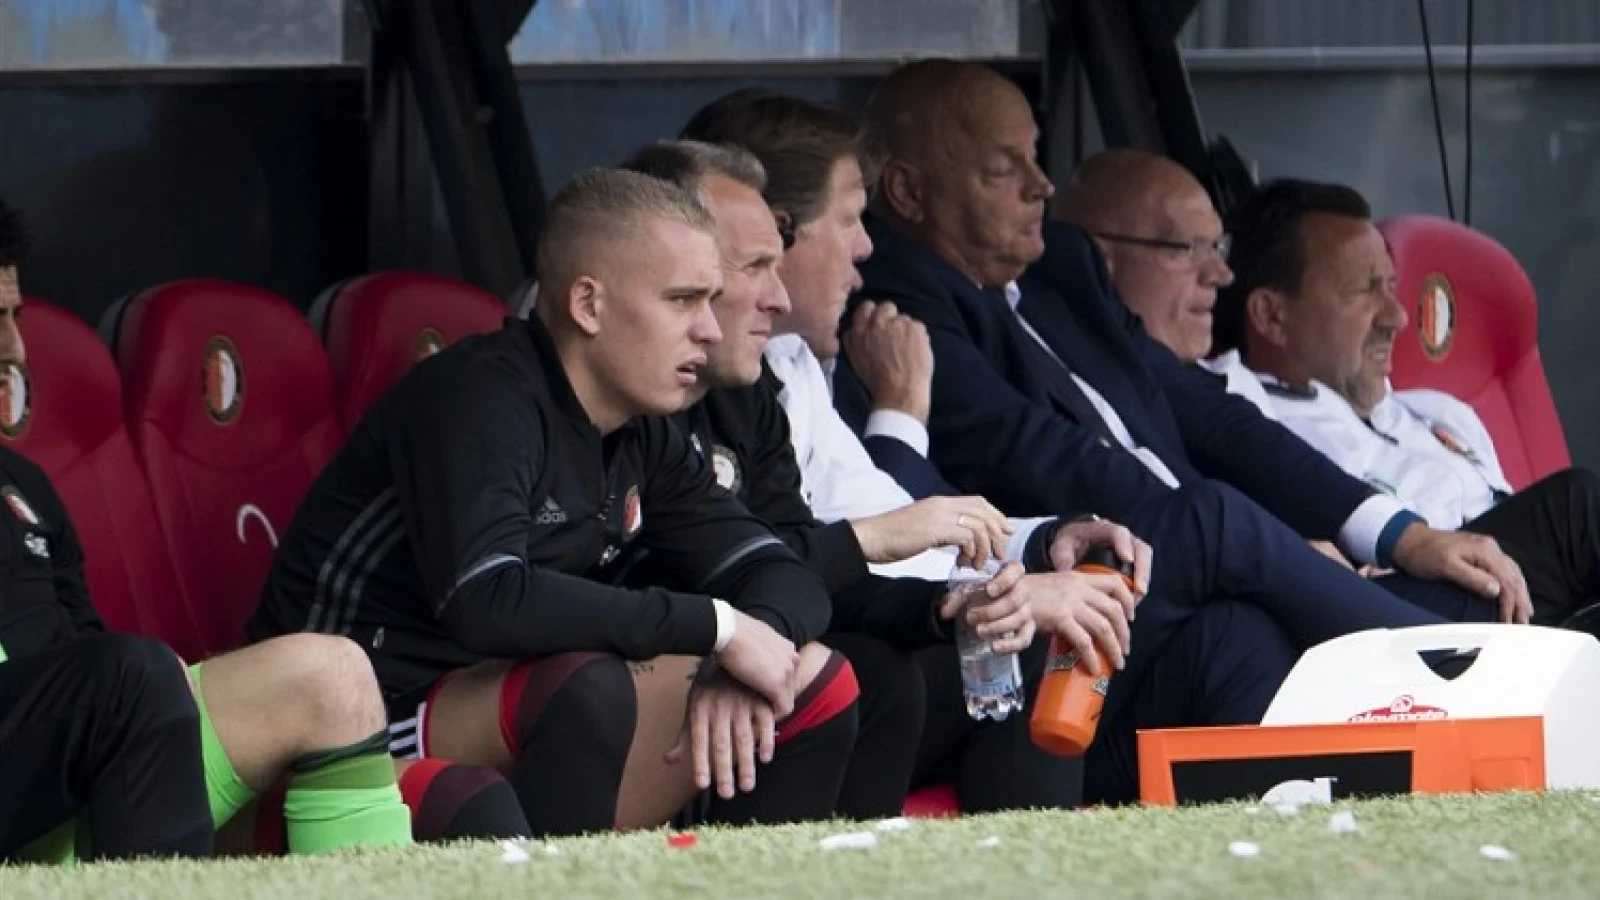 St. Juste heeft Feyenoord goed gedaan door te vertrekken: 'Je gaat er alleen maar op vooruit'